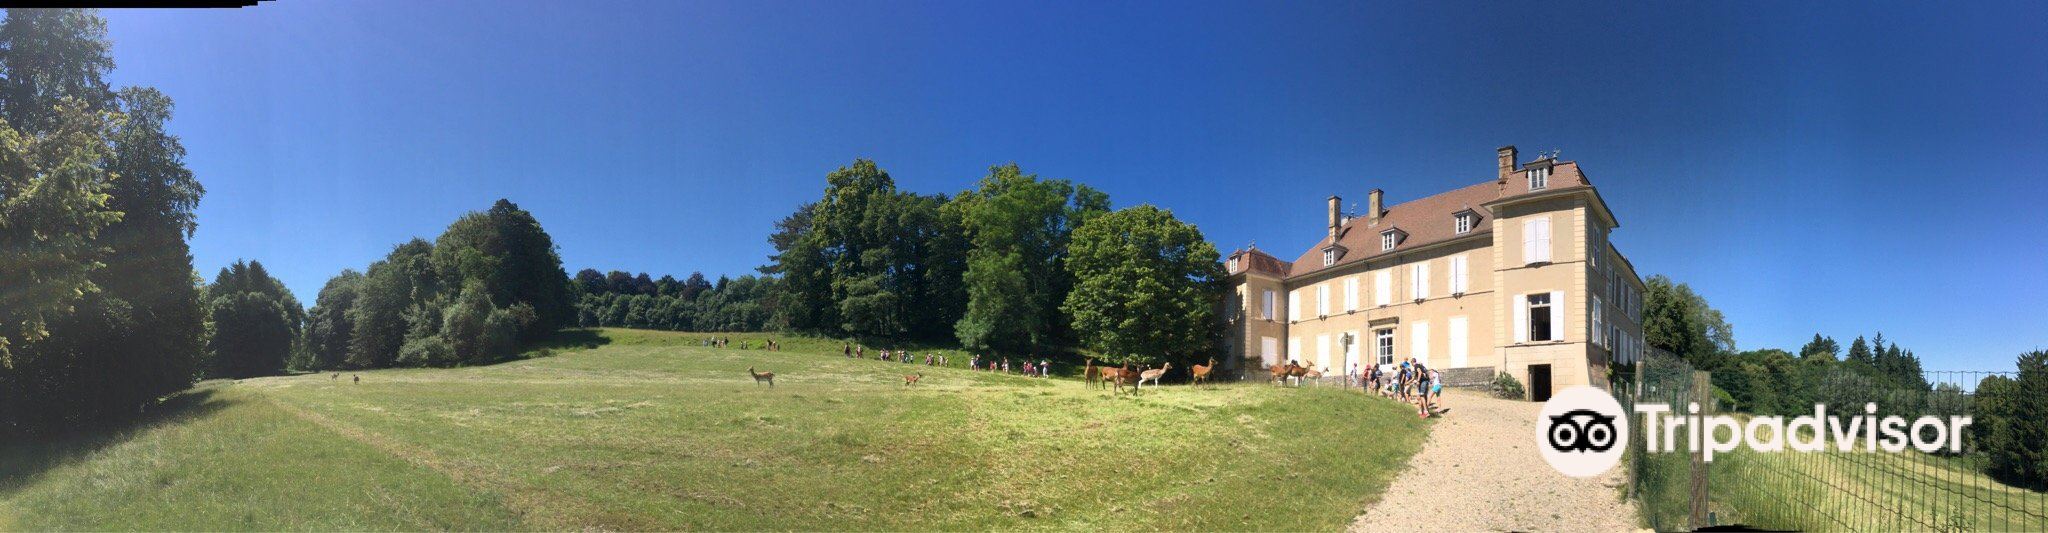 Château de Moidiere旅游景点图片